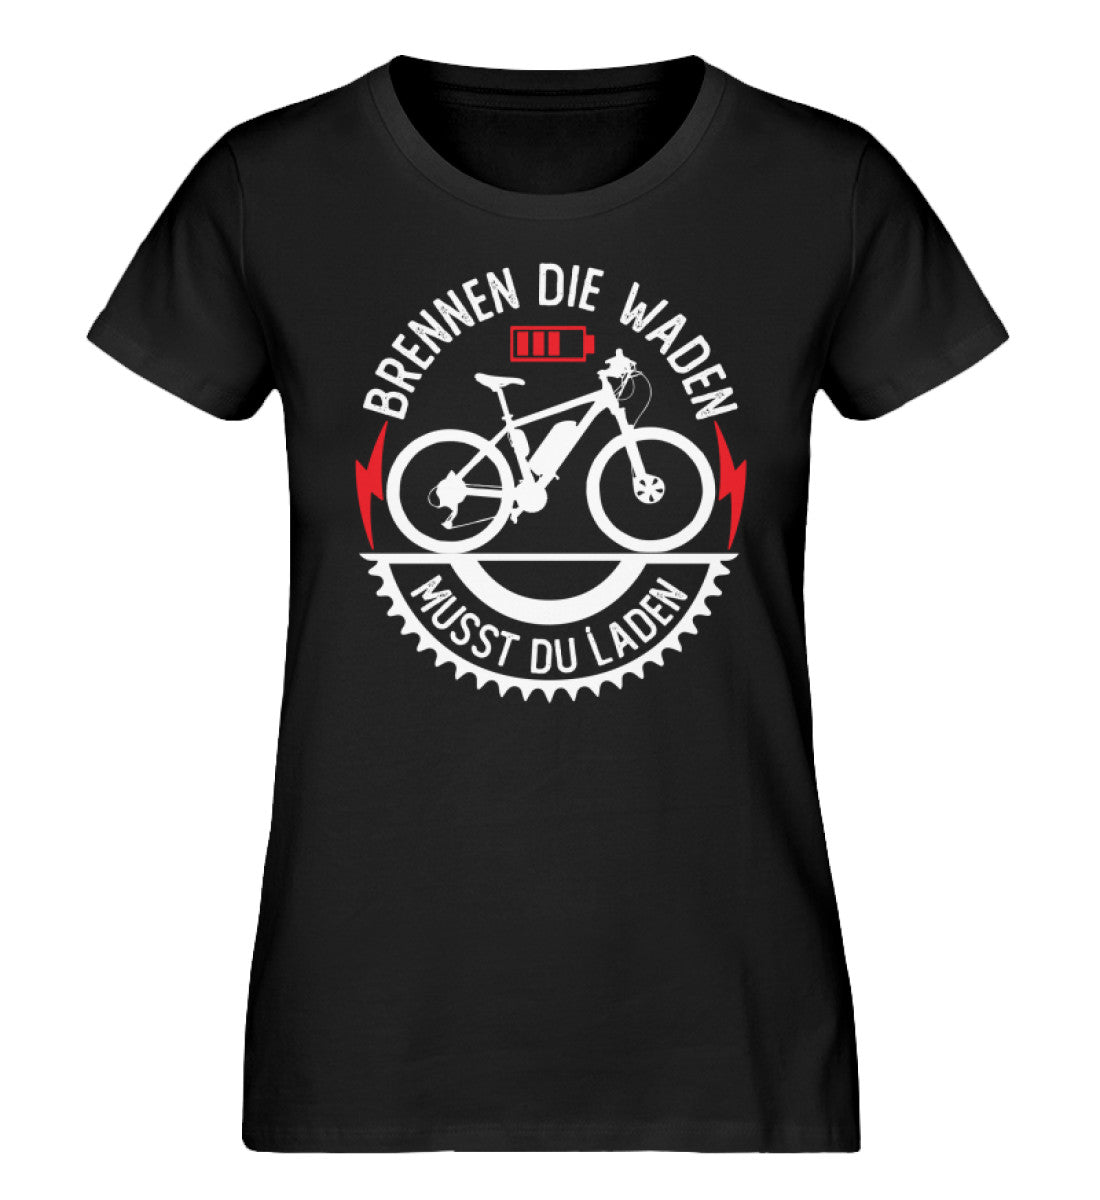 Brennen die Waden musst du laden - Damen Organic T-Shirt e-bike Schwarz